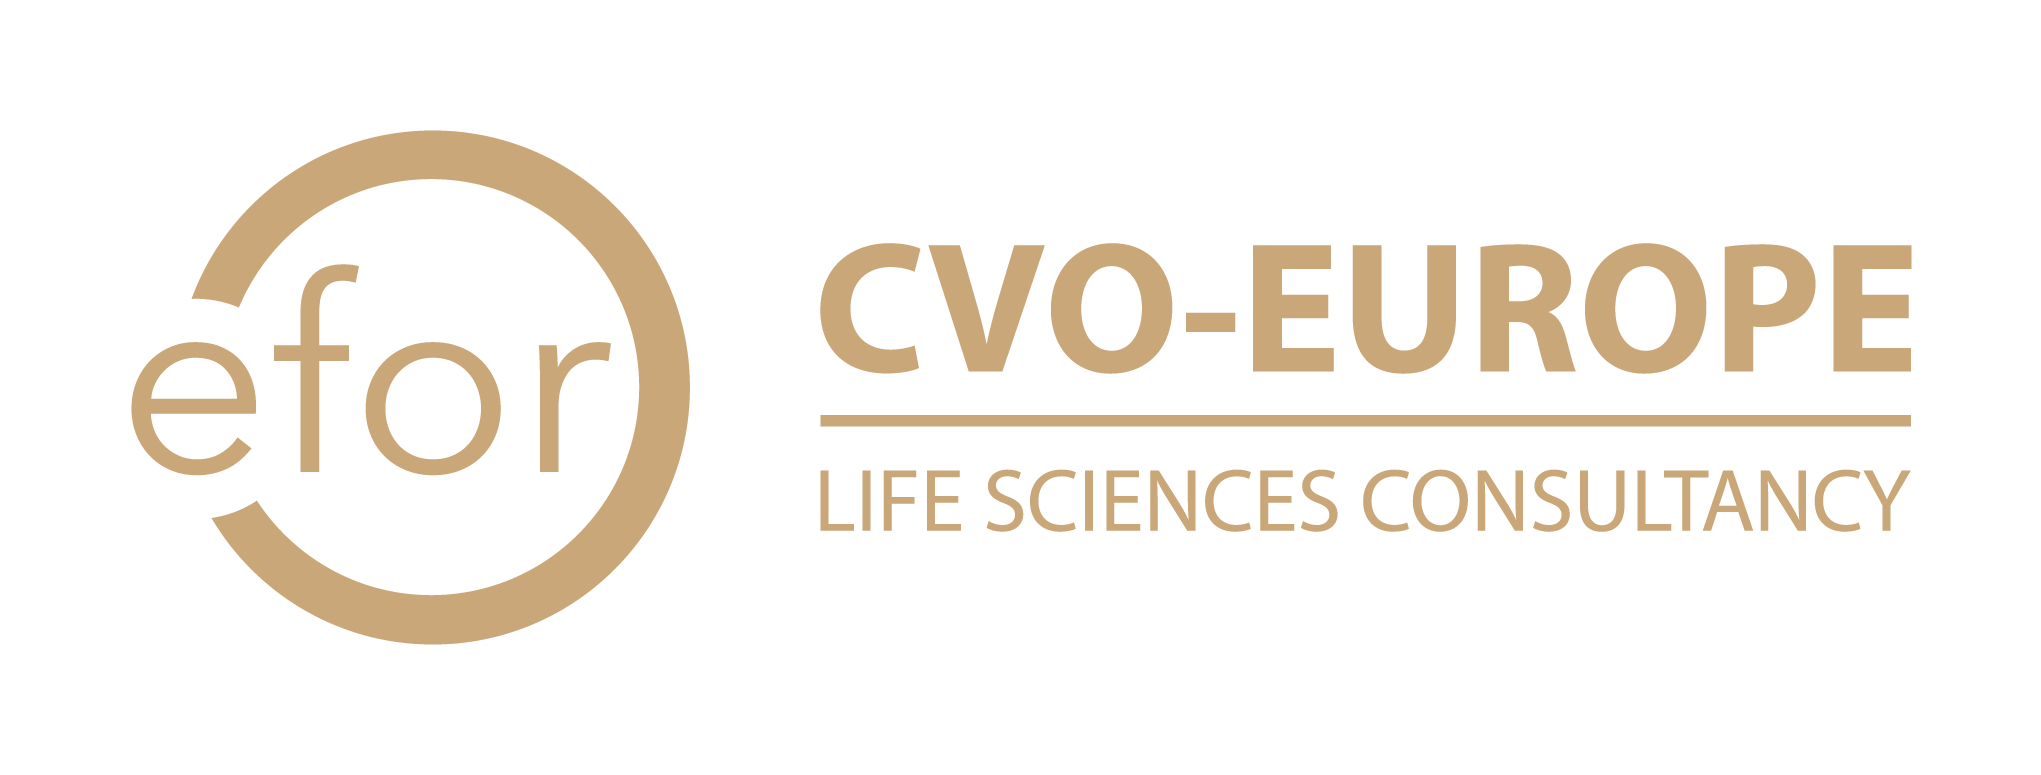 EFOR-CVO logo